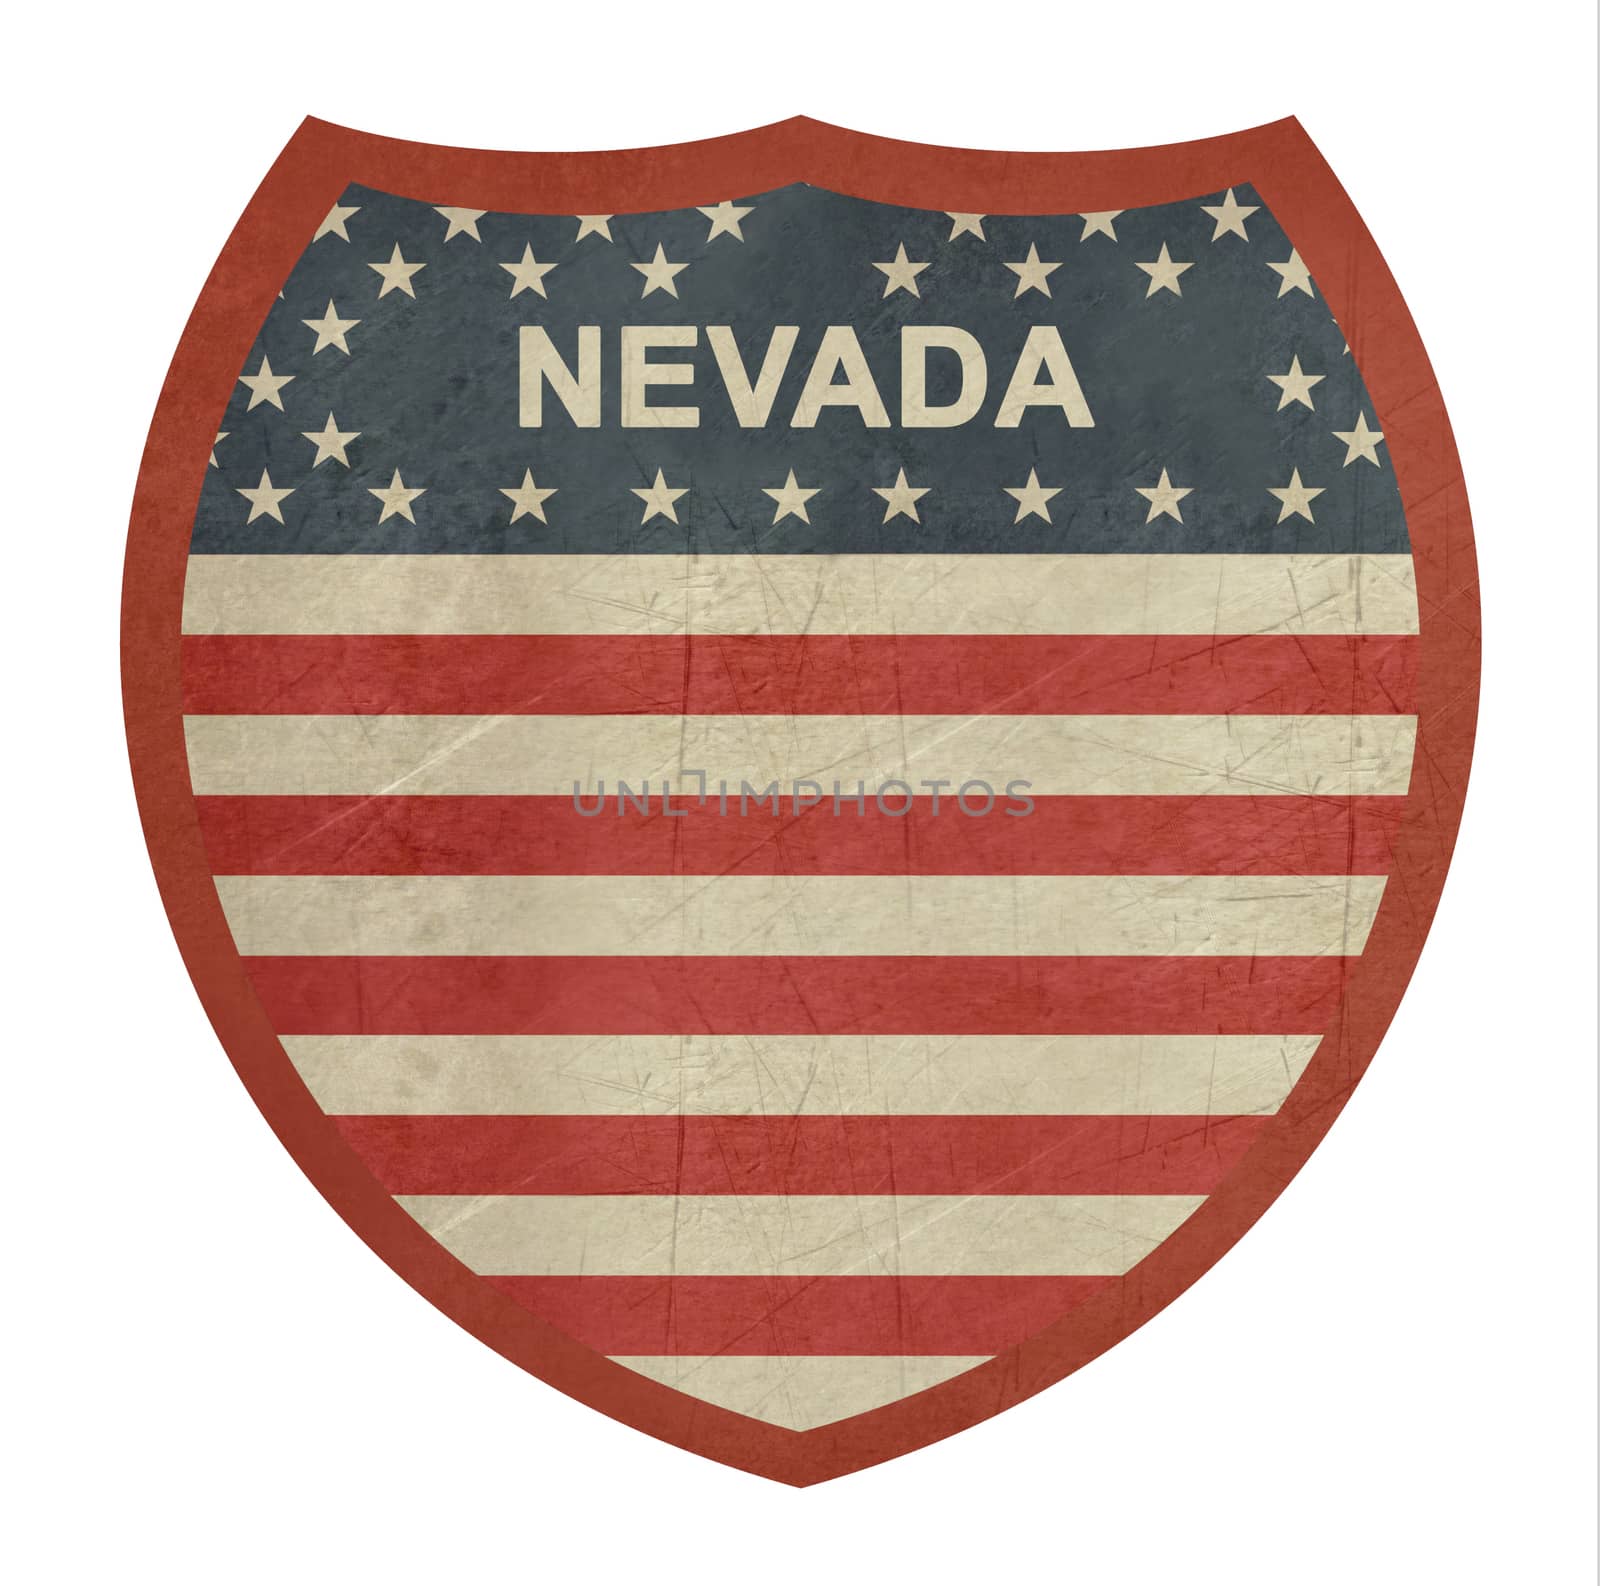 Grunge Nevada American interstate highway sign by speedfighter